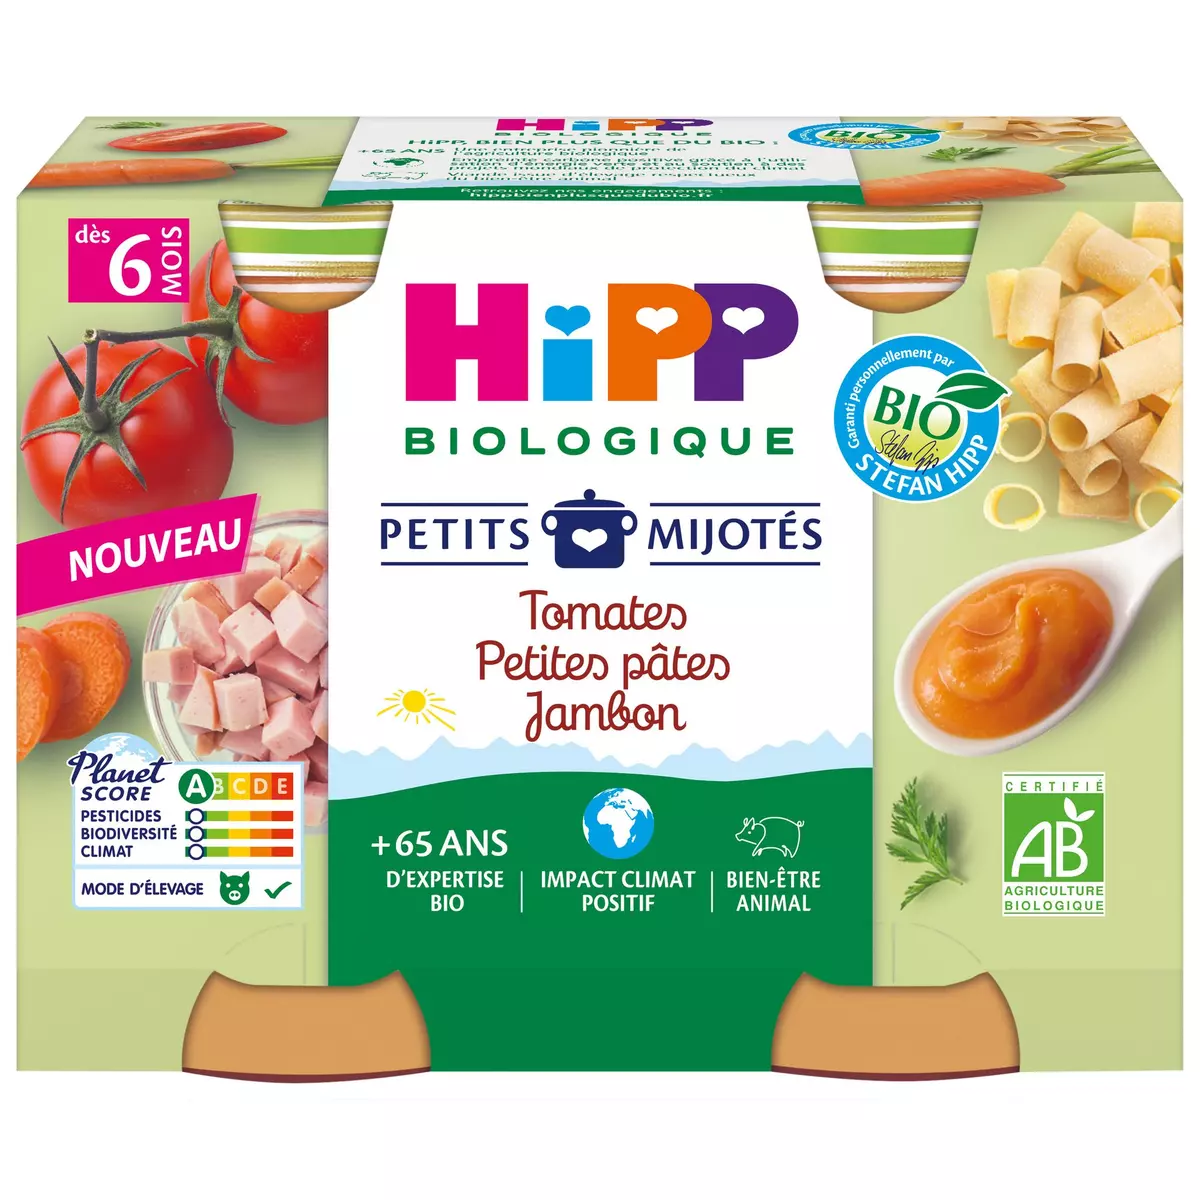 HIPP Petits mijotés petit pot tomates petites pâtes jambon bio dès 6 mois 2x190g